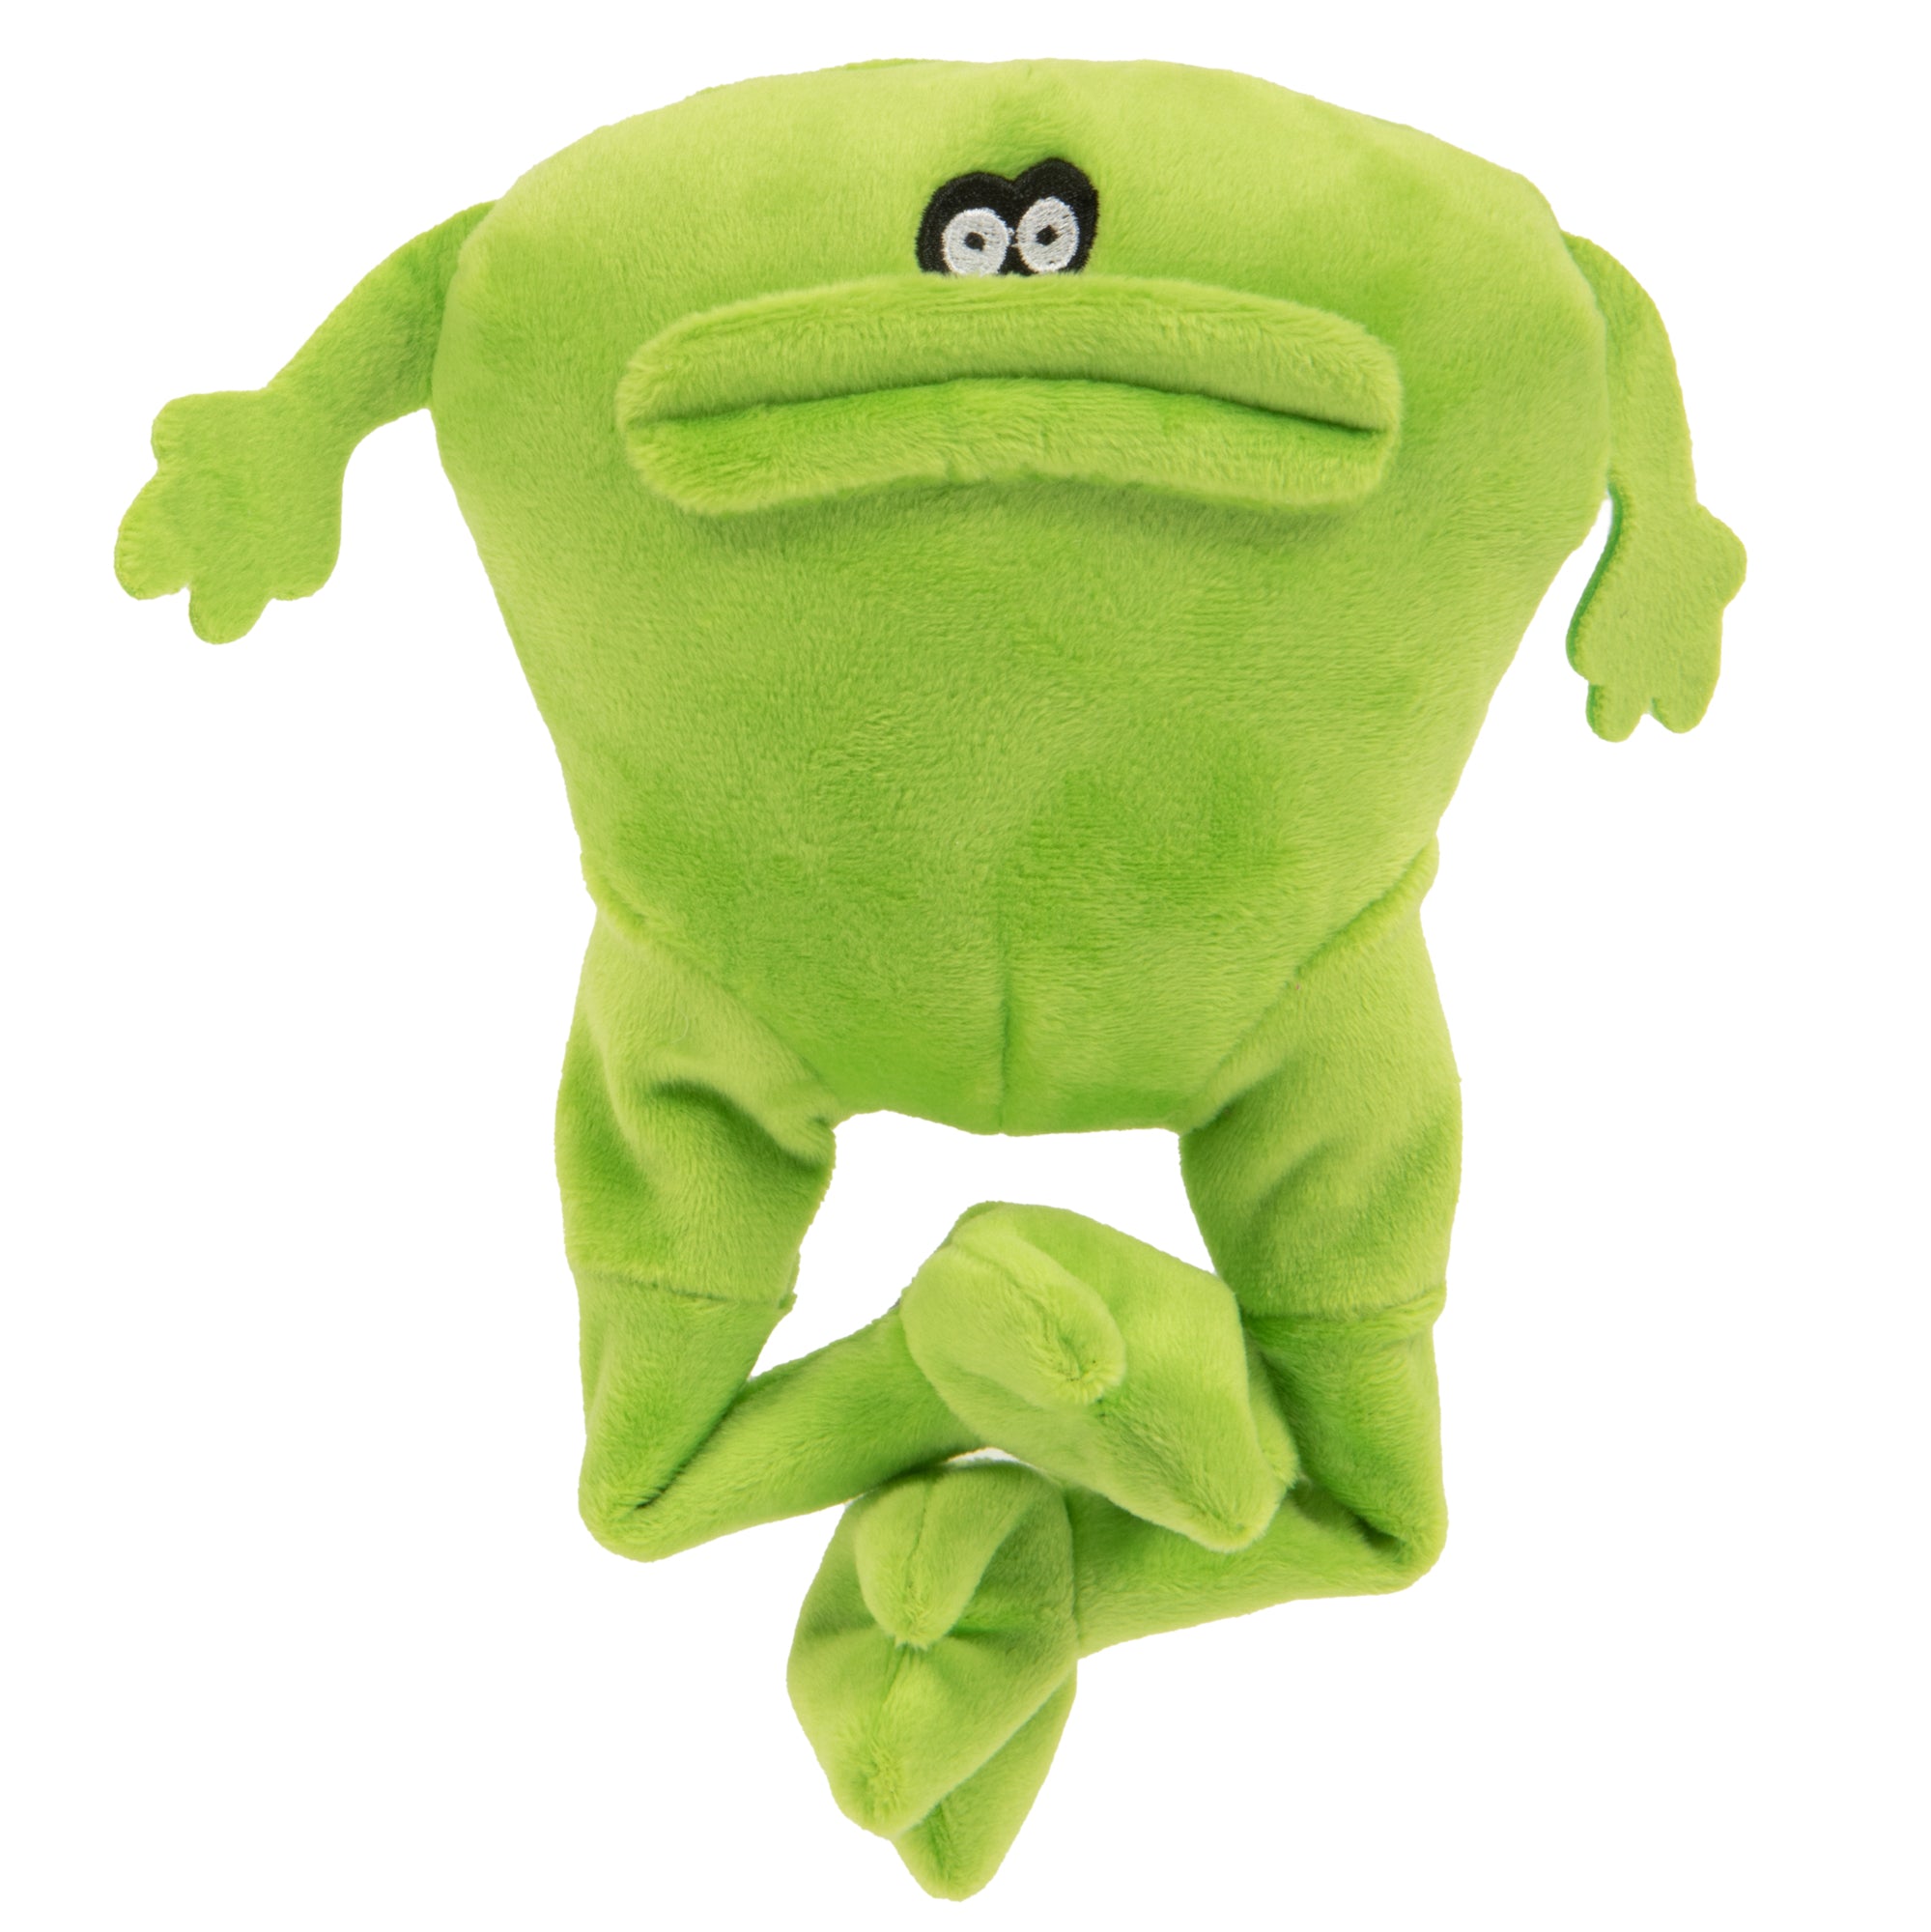 goDog Action Plus Animated Frog Squeaky Plush Dog Toy